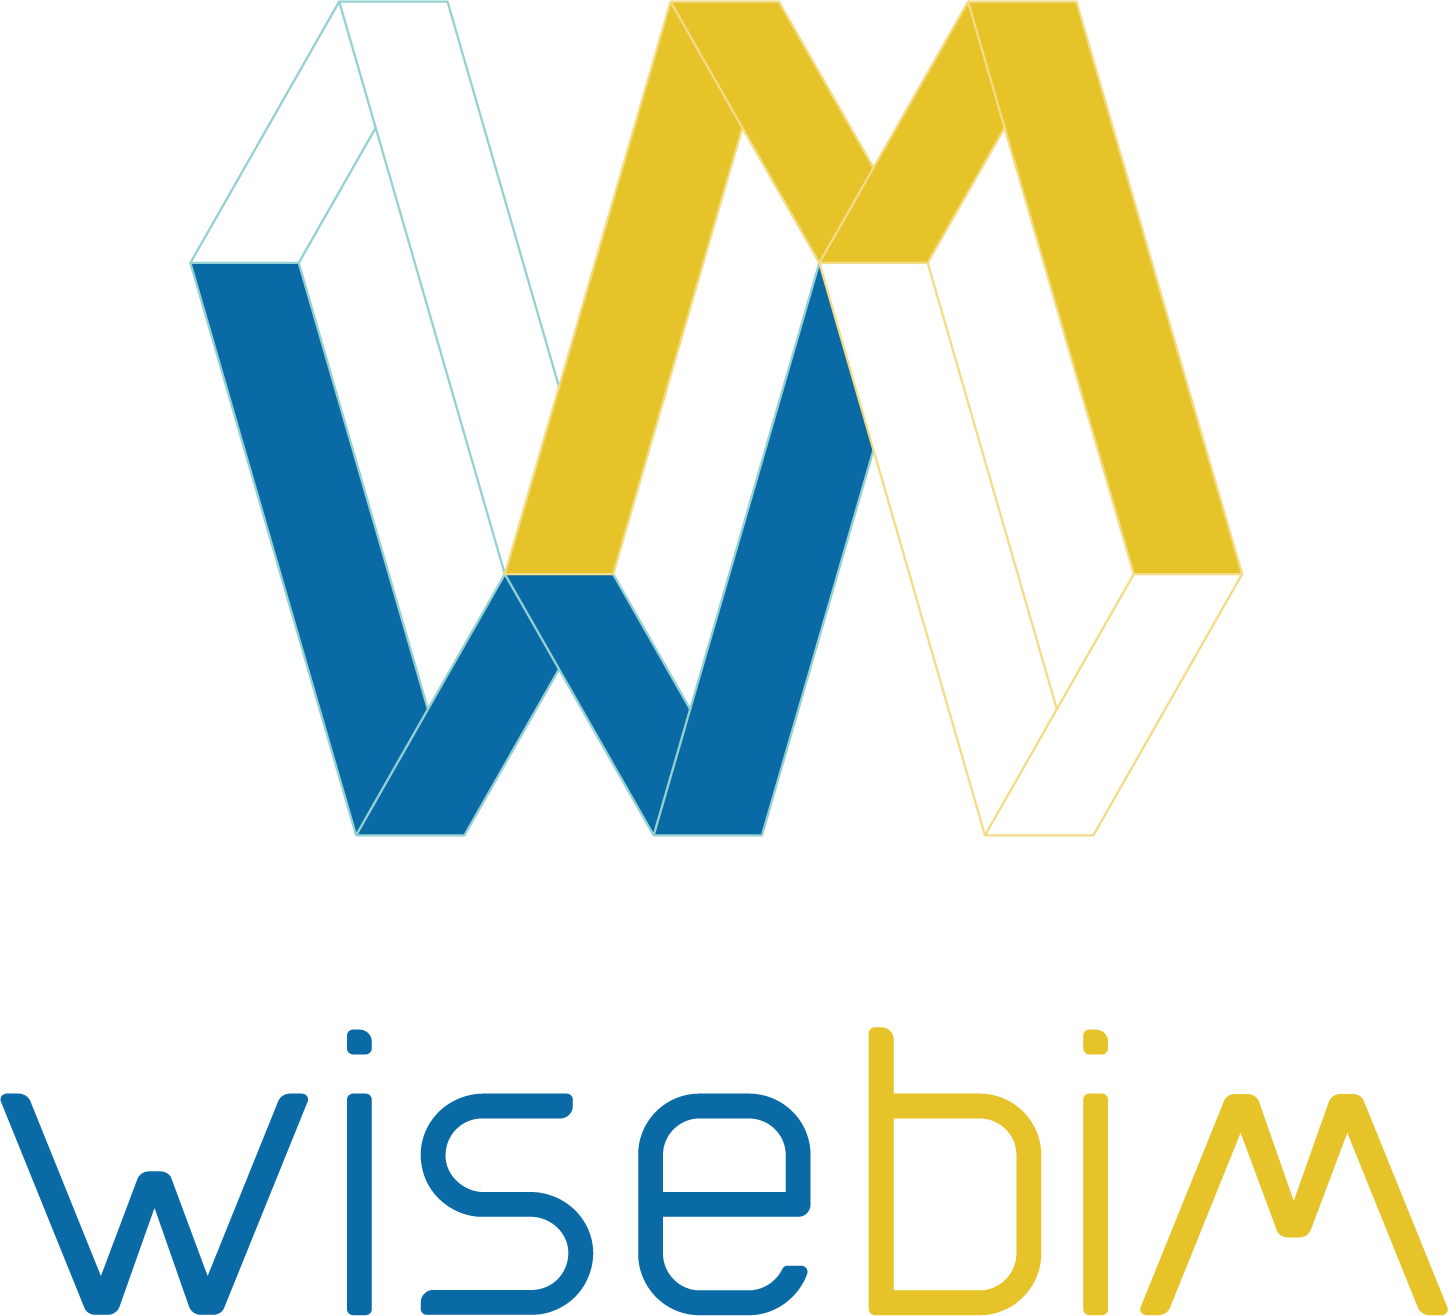 Wisebim logo 2021